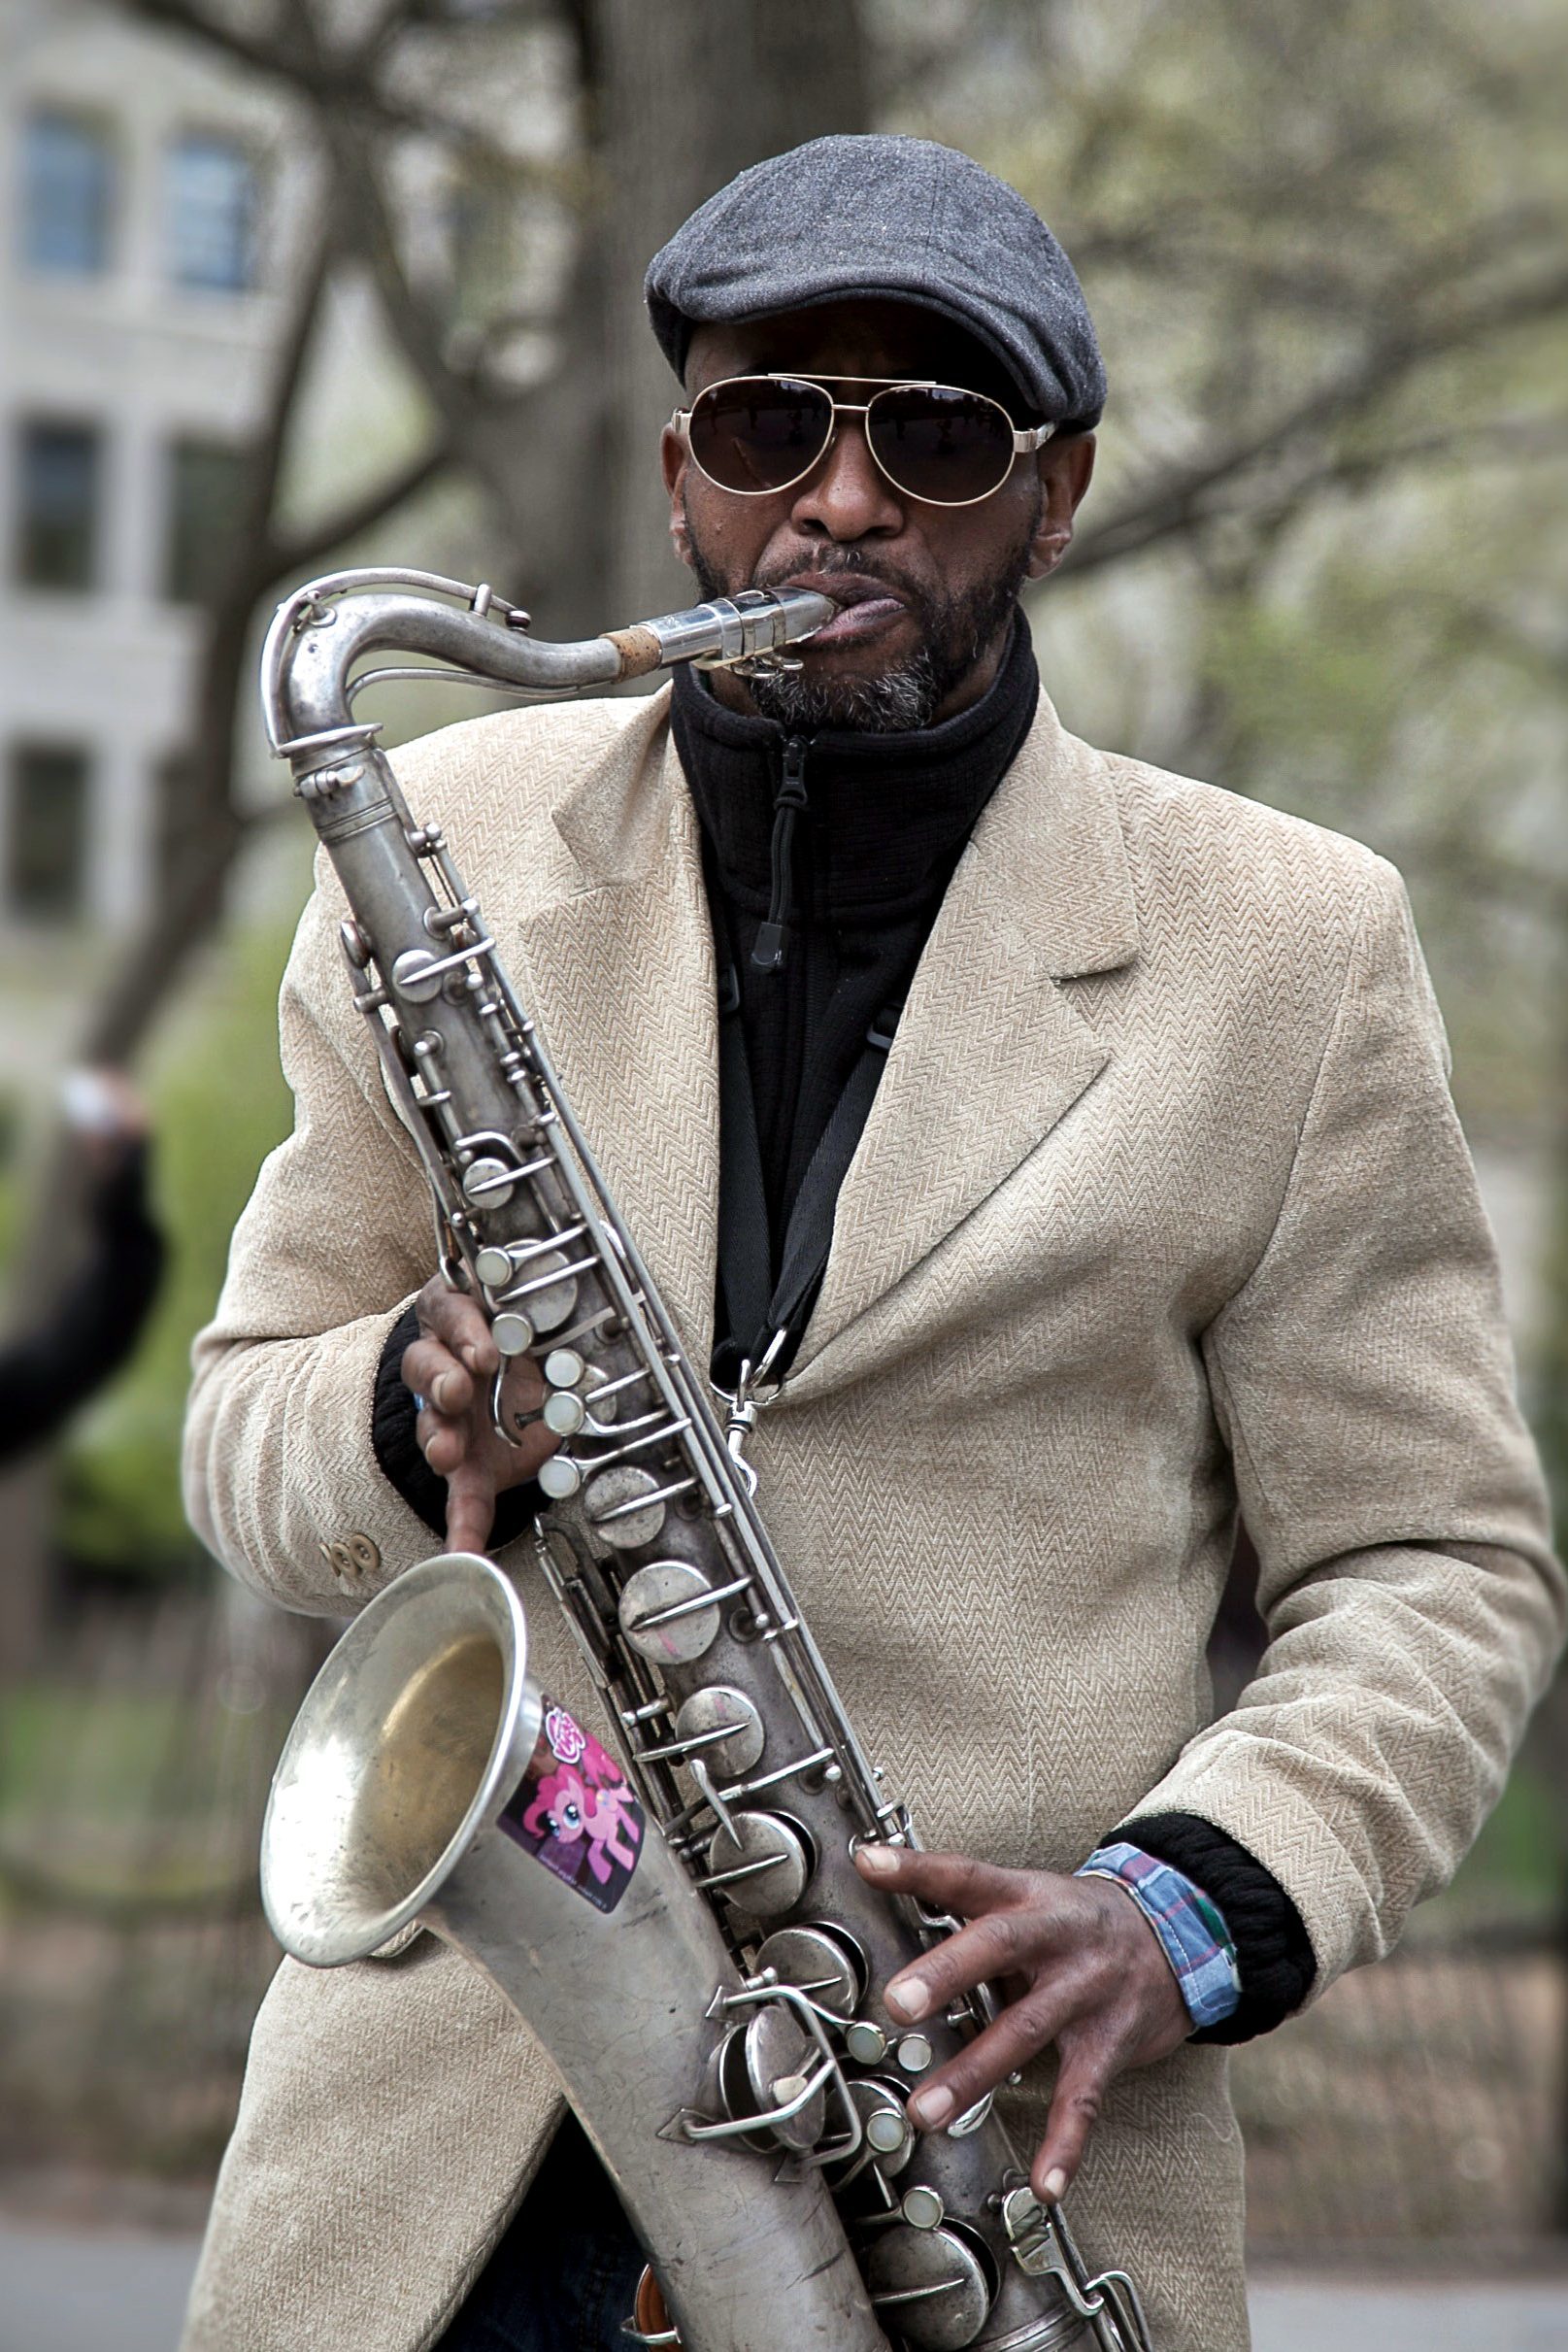 Image libre: joueur de saxophone